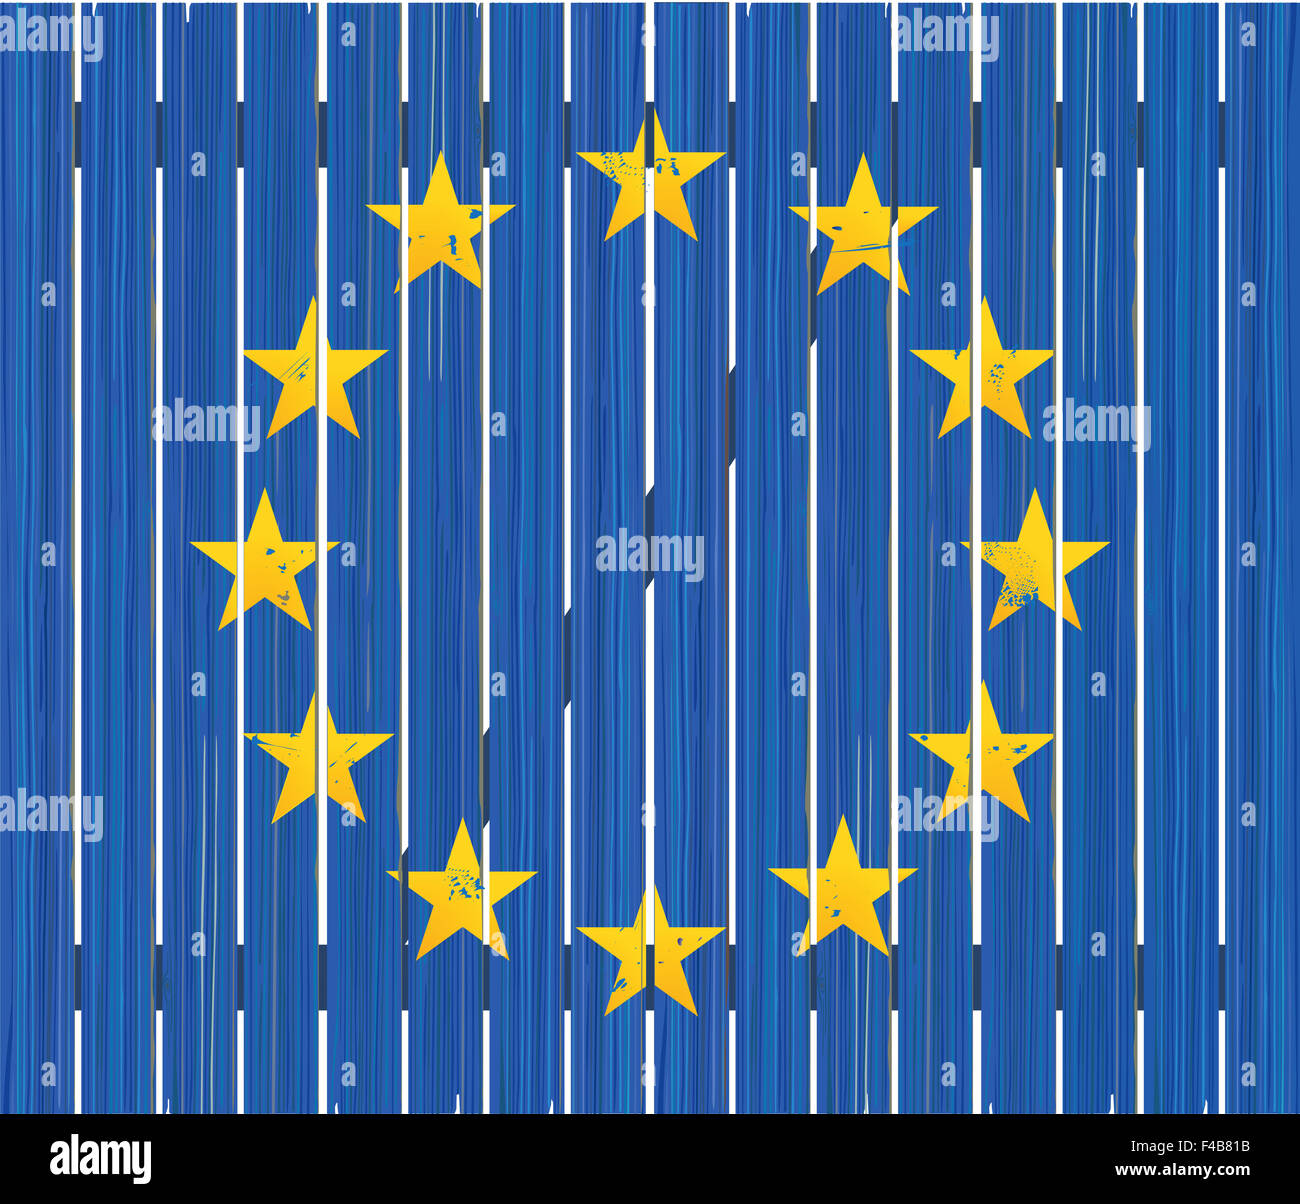 European flag on wooden fence Stock Photo